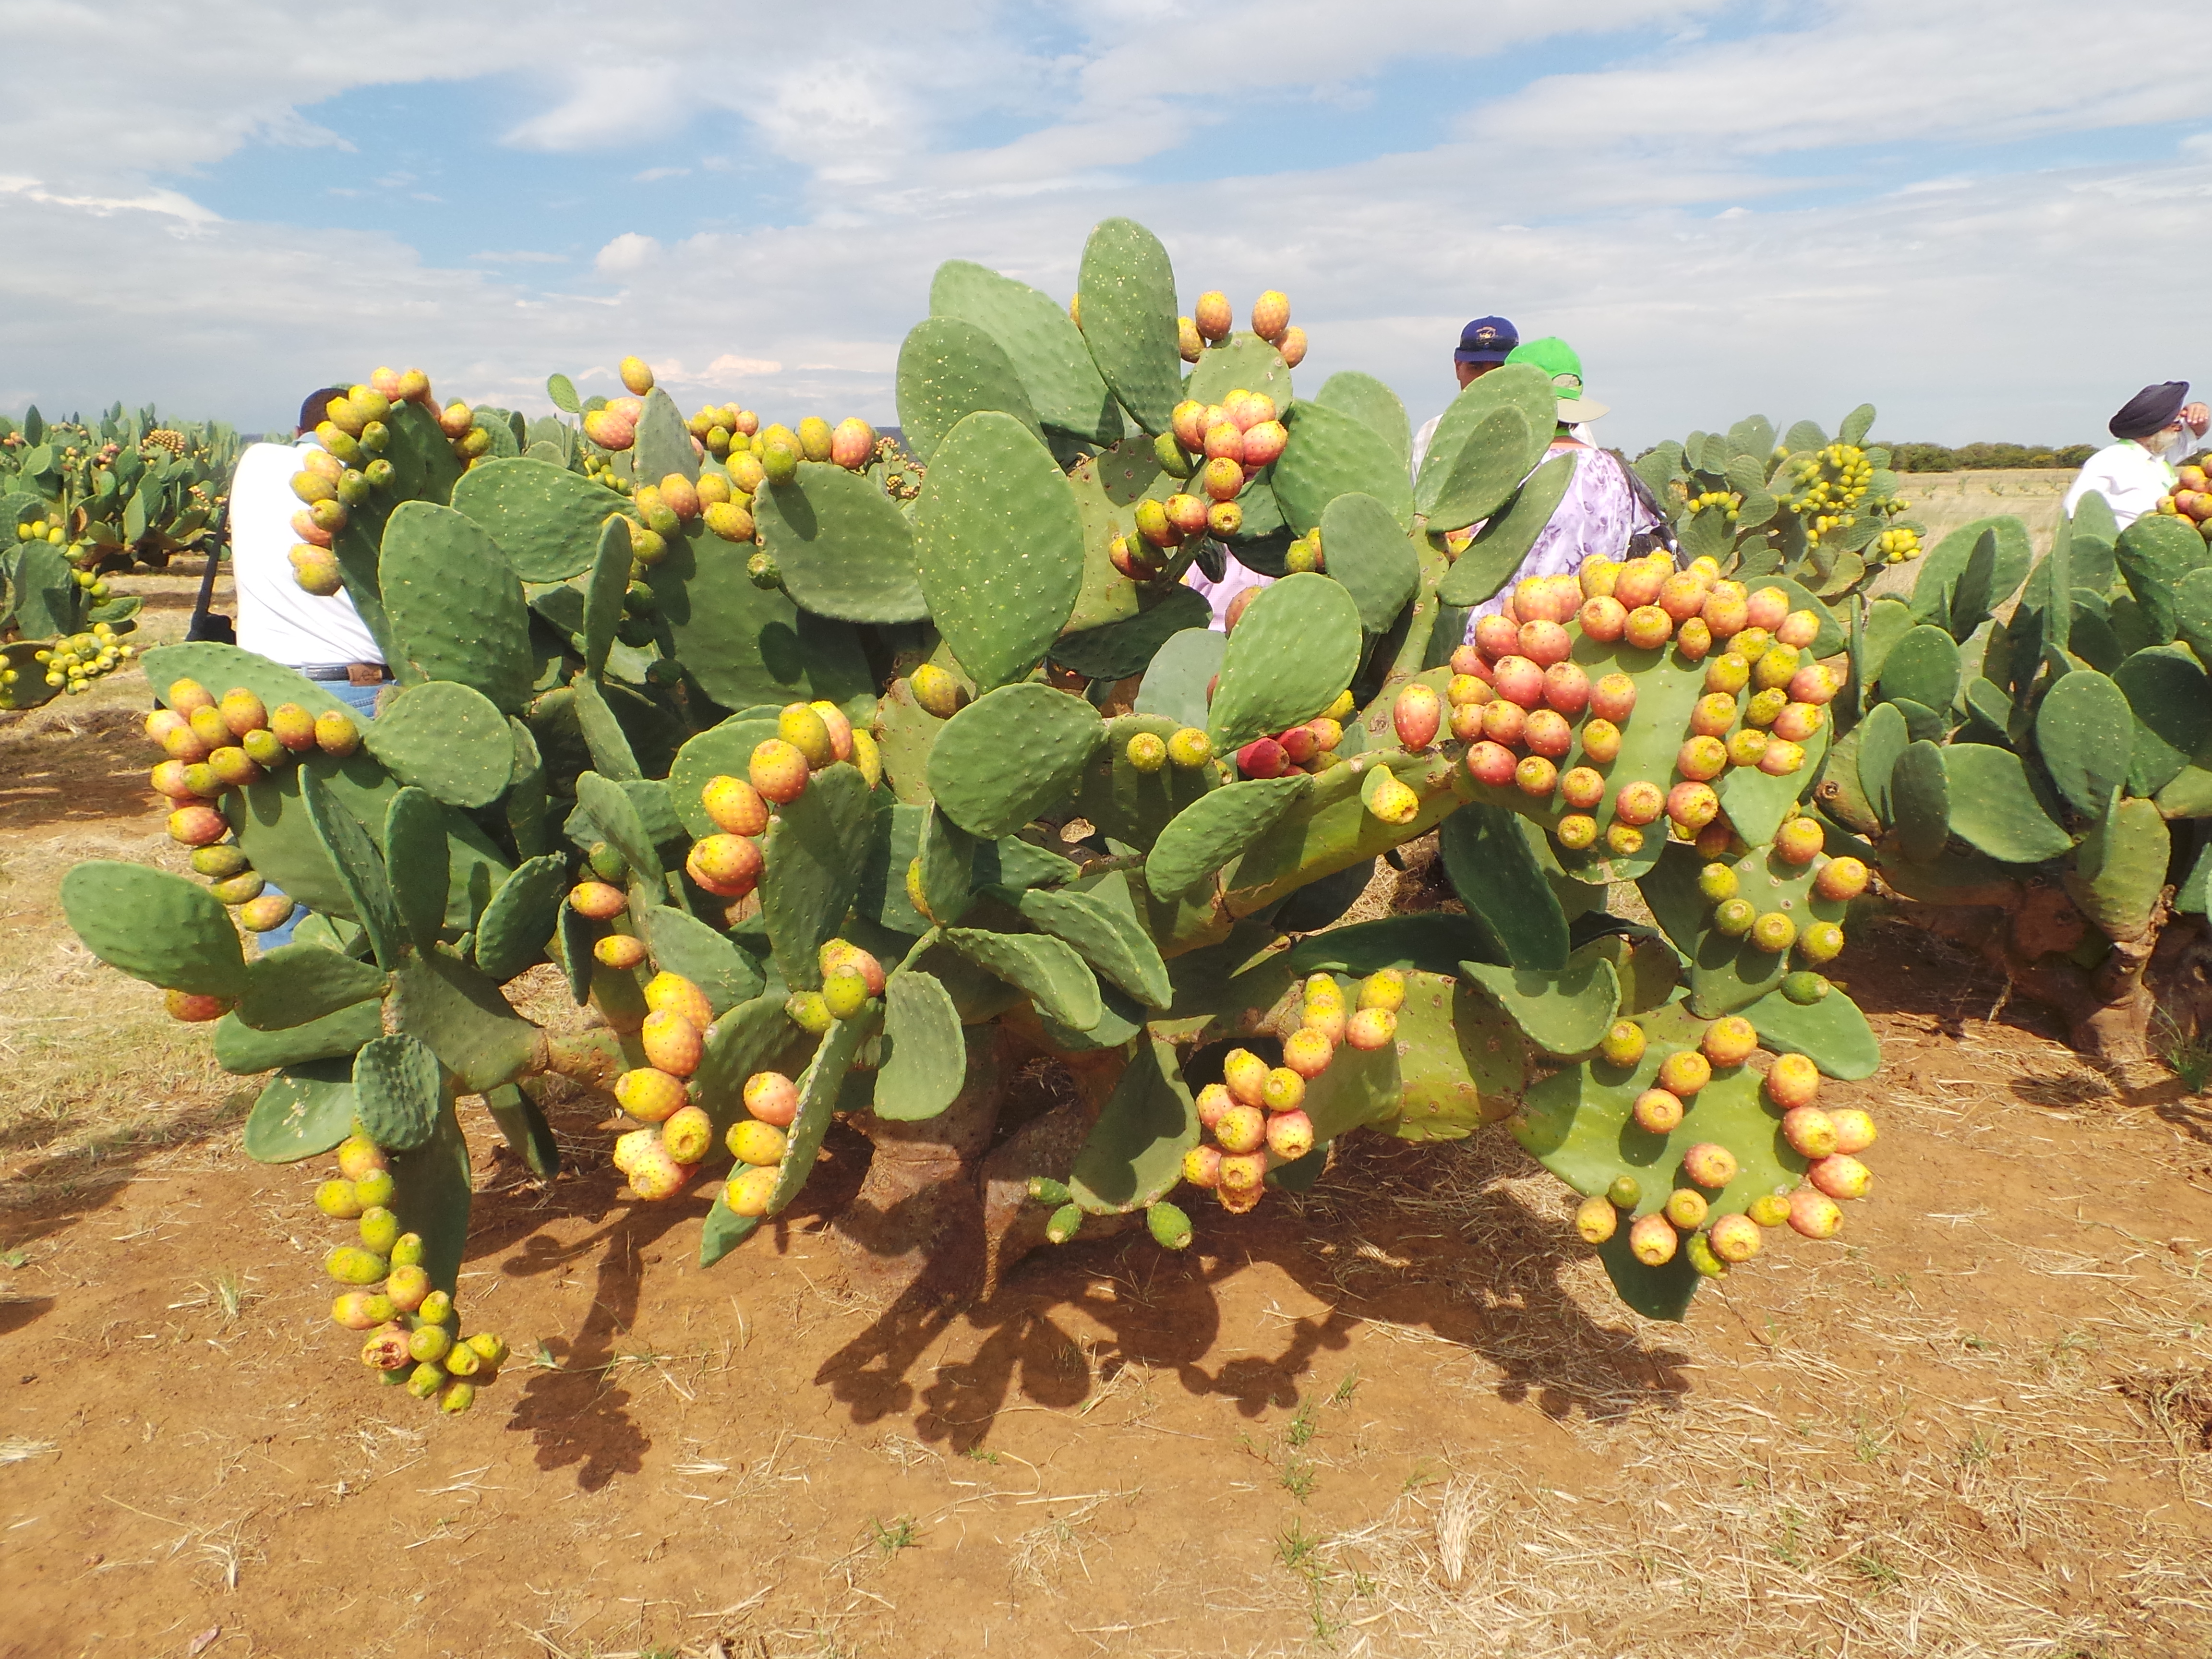 cactus-field-visit-during-international-cactus-pear-workshop-held-in-bloemfontein-south-africa-4